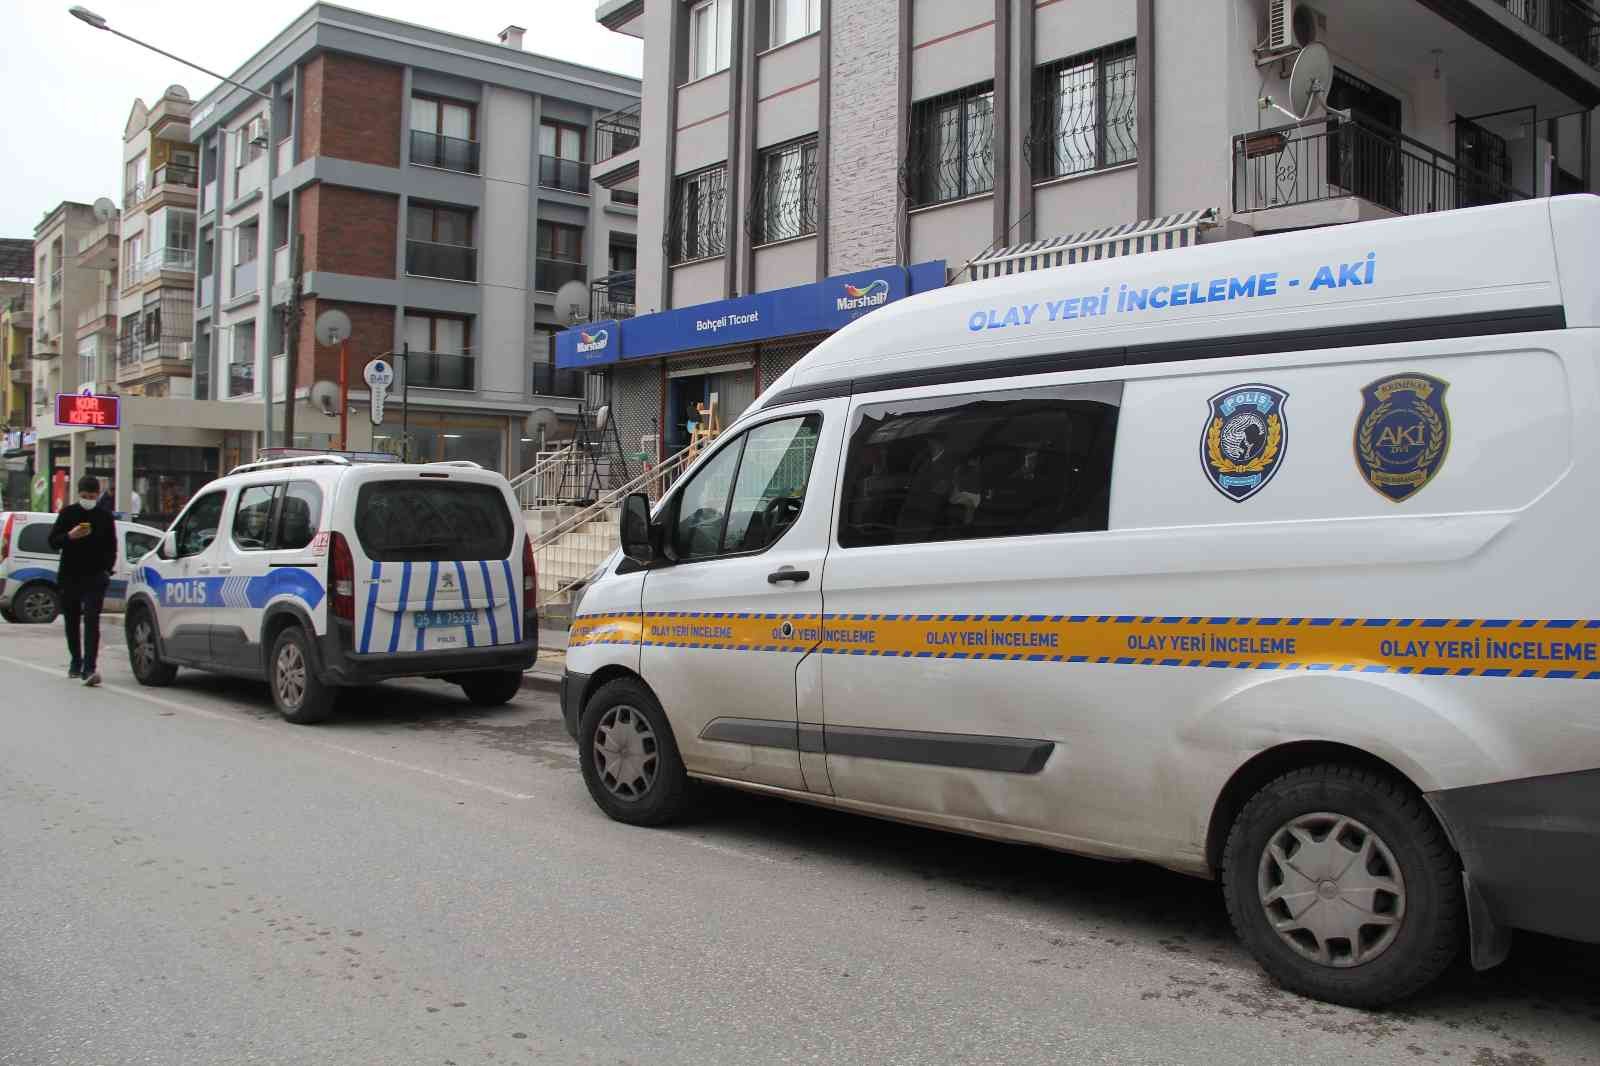 İzmir’de kan davalısı tarafından silahla vurulan kişi yaşam mücadelesini kaybetti #izmir